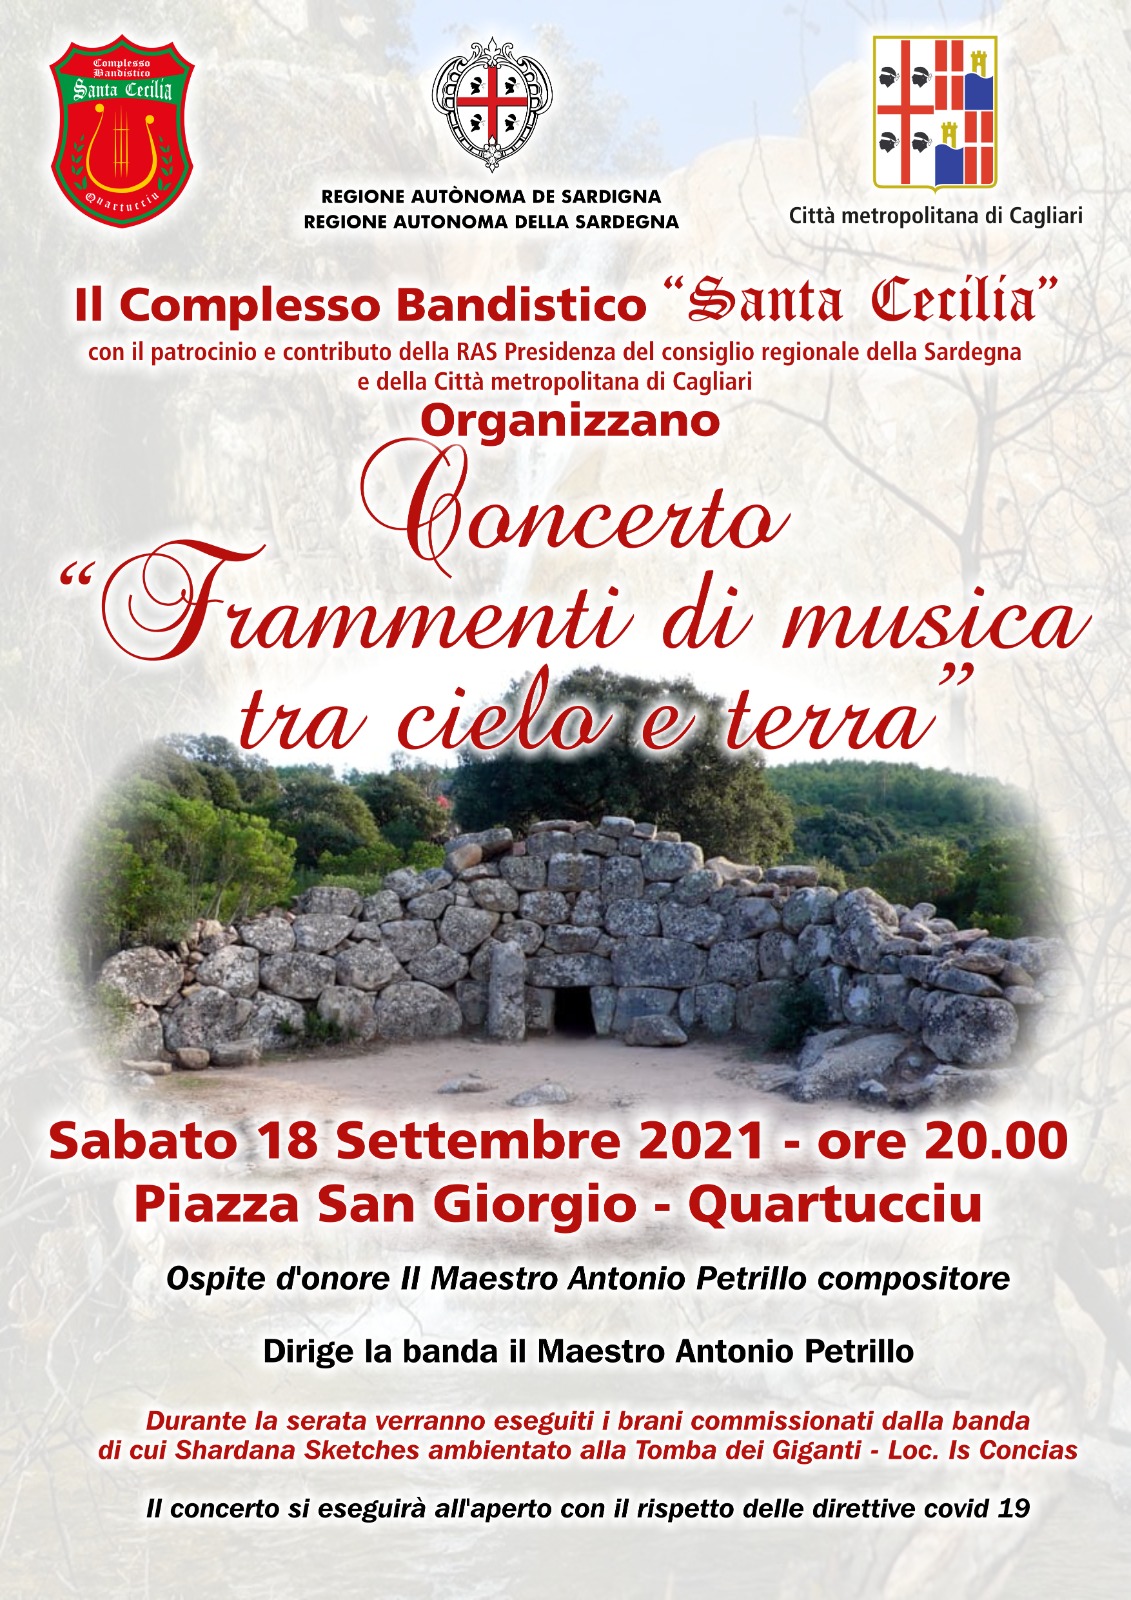 Concerto "Frammenti di Musica tra cielo e terra" - Complesso Bandistico "Santa Cecilia" di Quartucciu (EVENTO RIMANDATO)